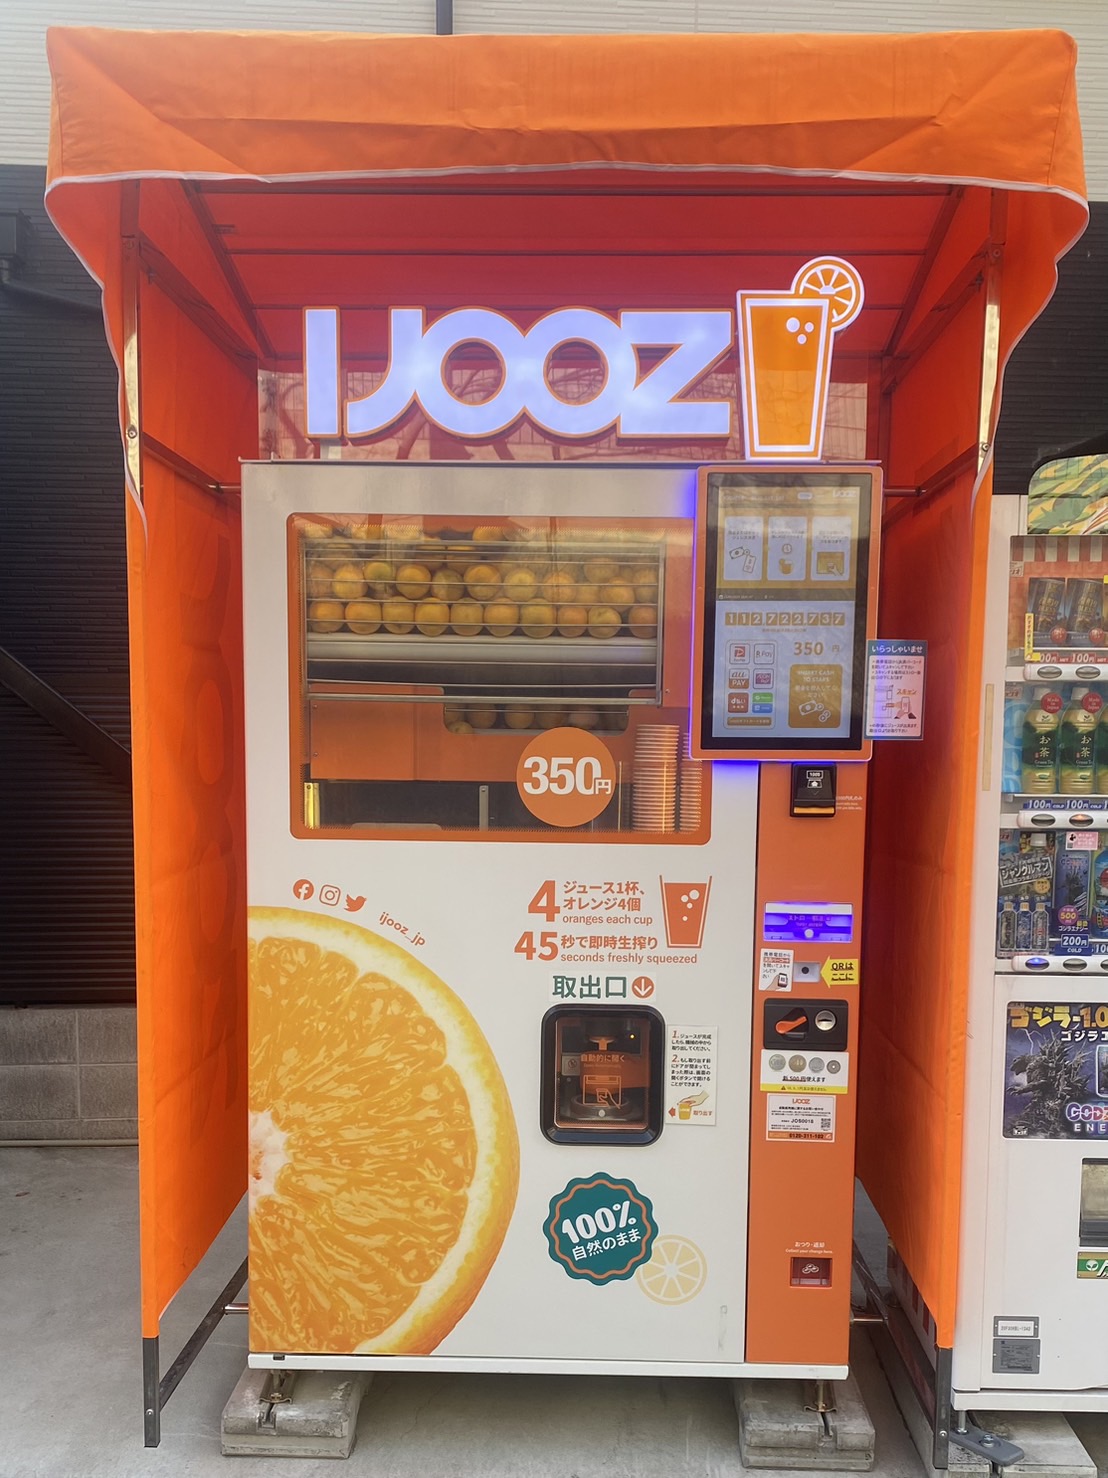 飛田新地の中にある生搾りオレンジジュース自動販売機